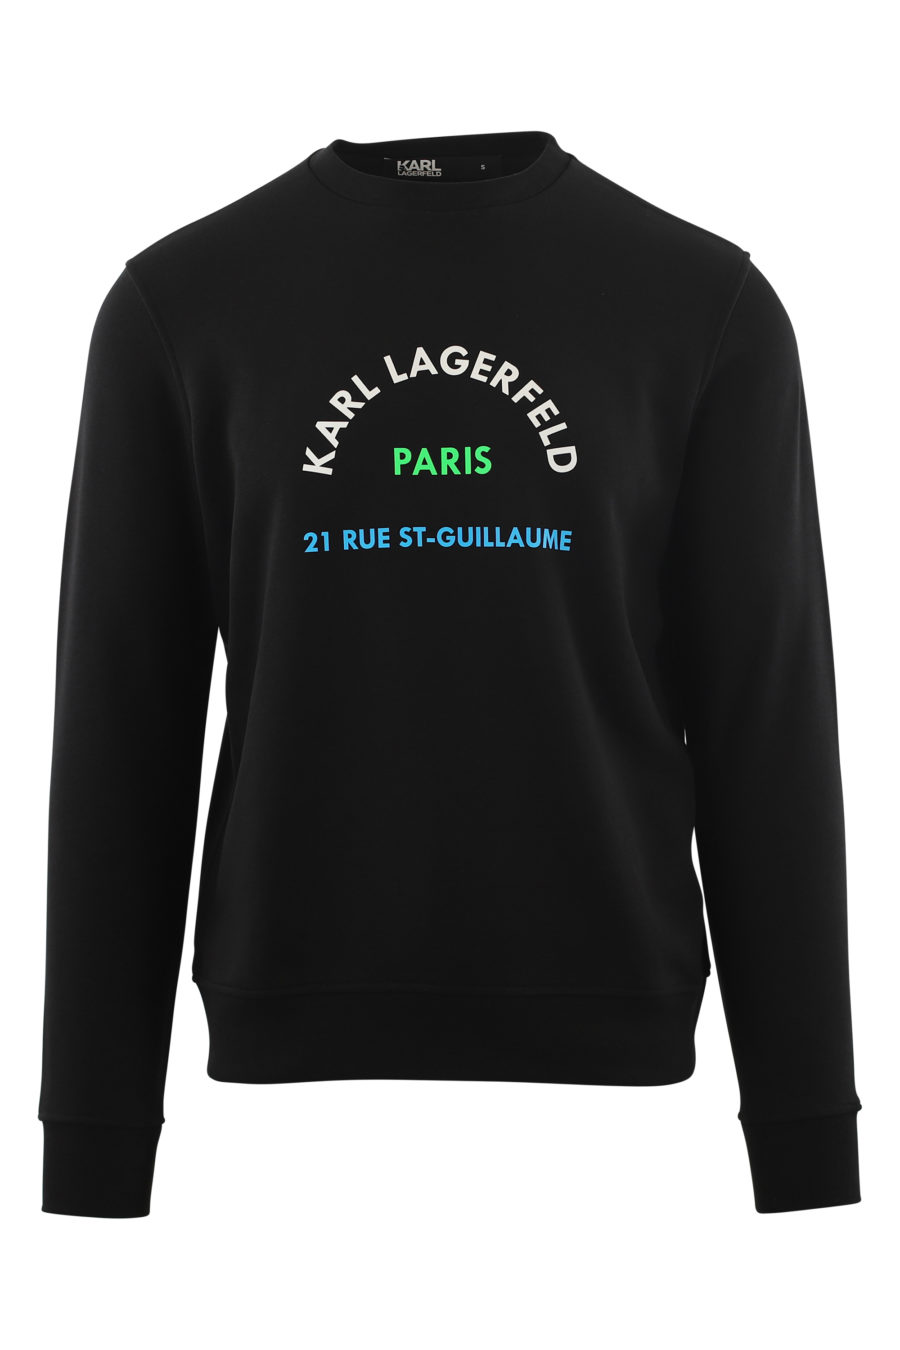 Camisola preta com logótipo "rue st- guillaume" multicolorido - IMG 6579